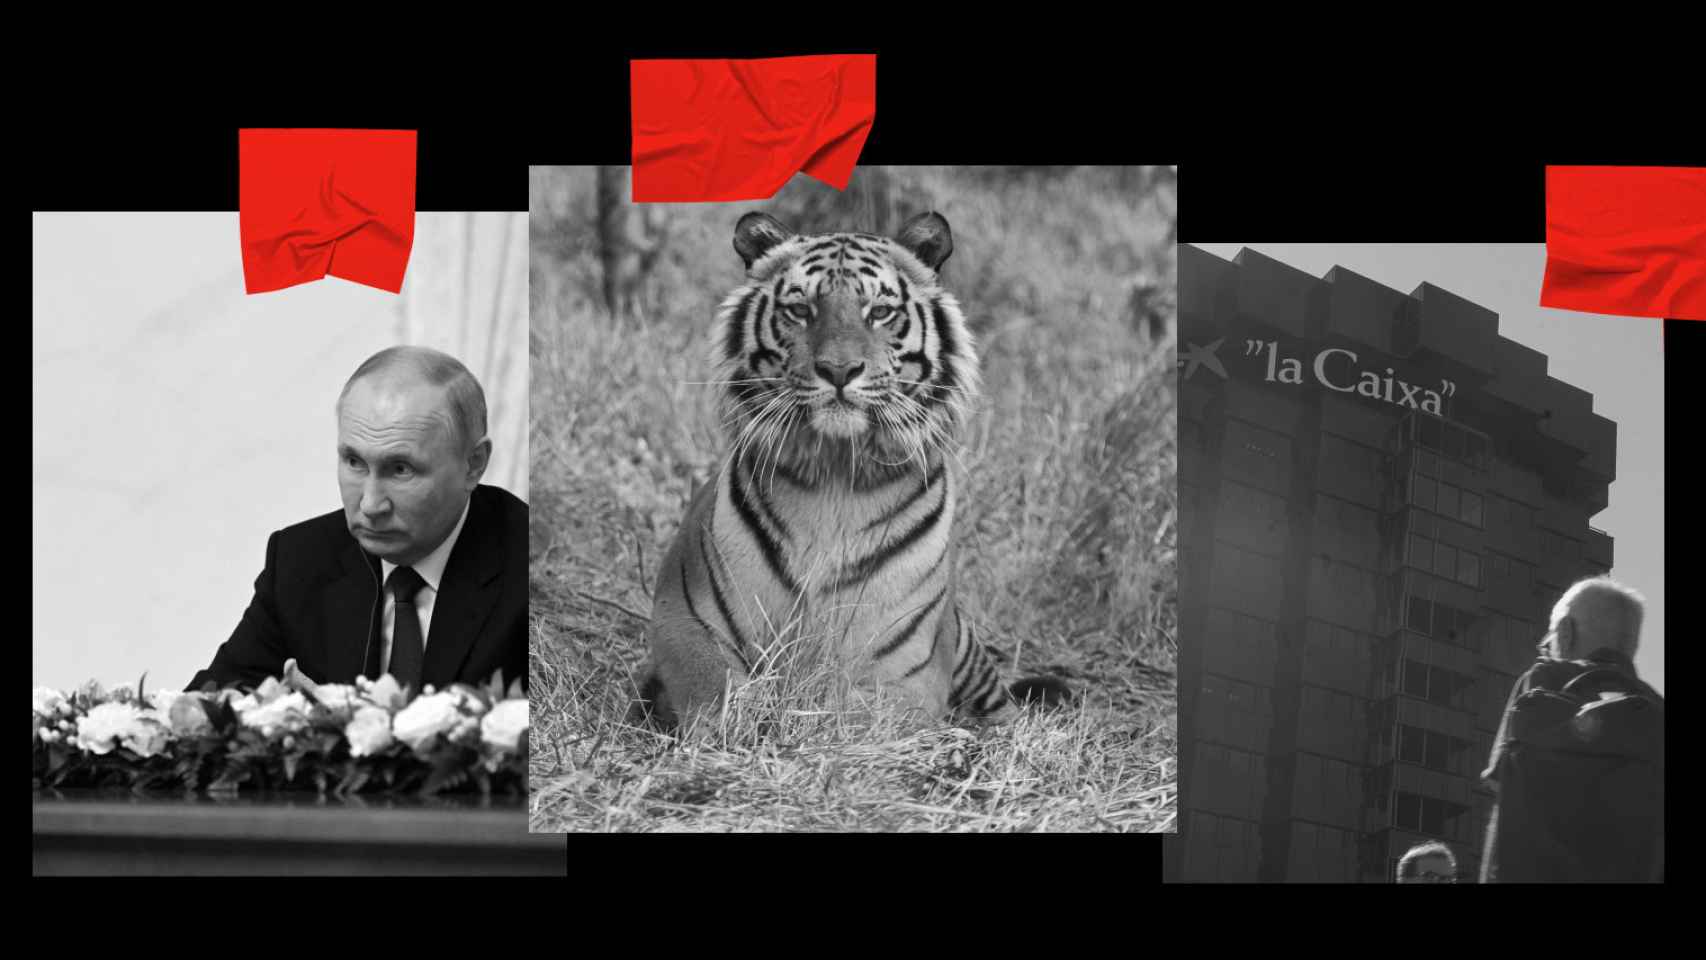 Vladímir Putin, un tigre de Sumatra y la sede de CaixaBank.